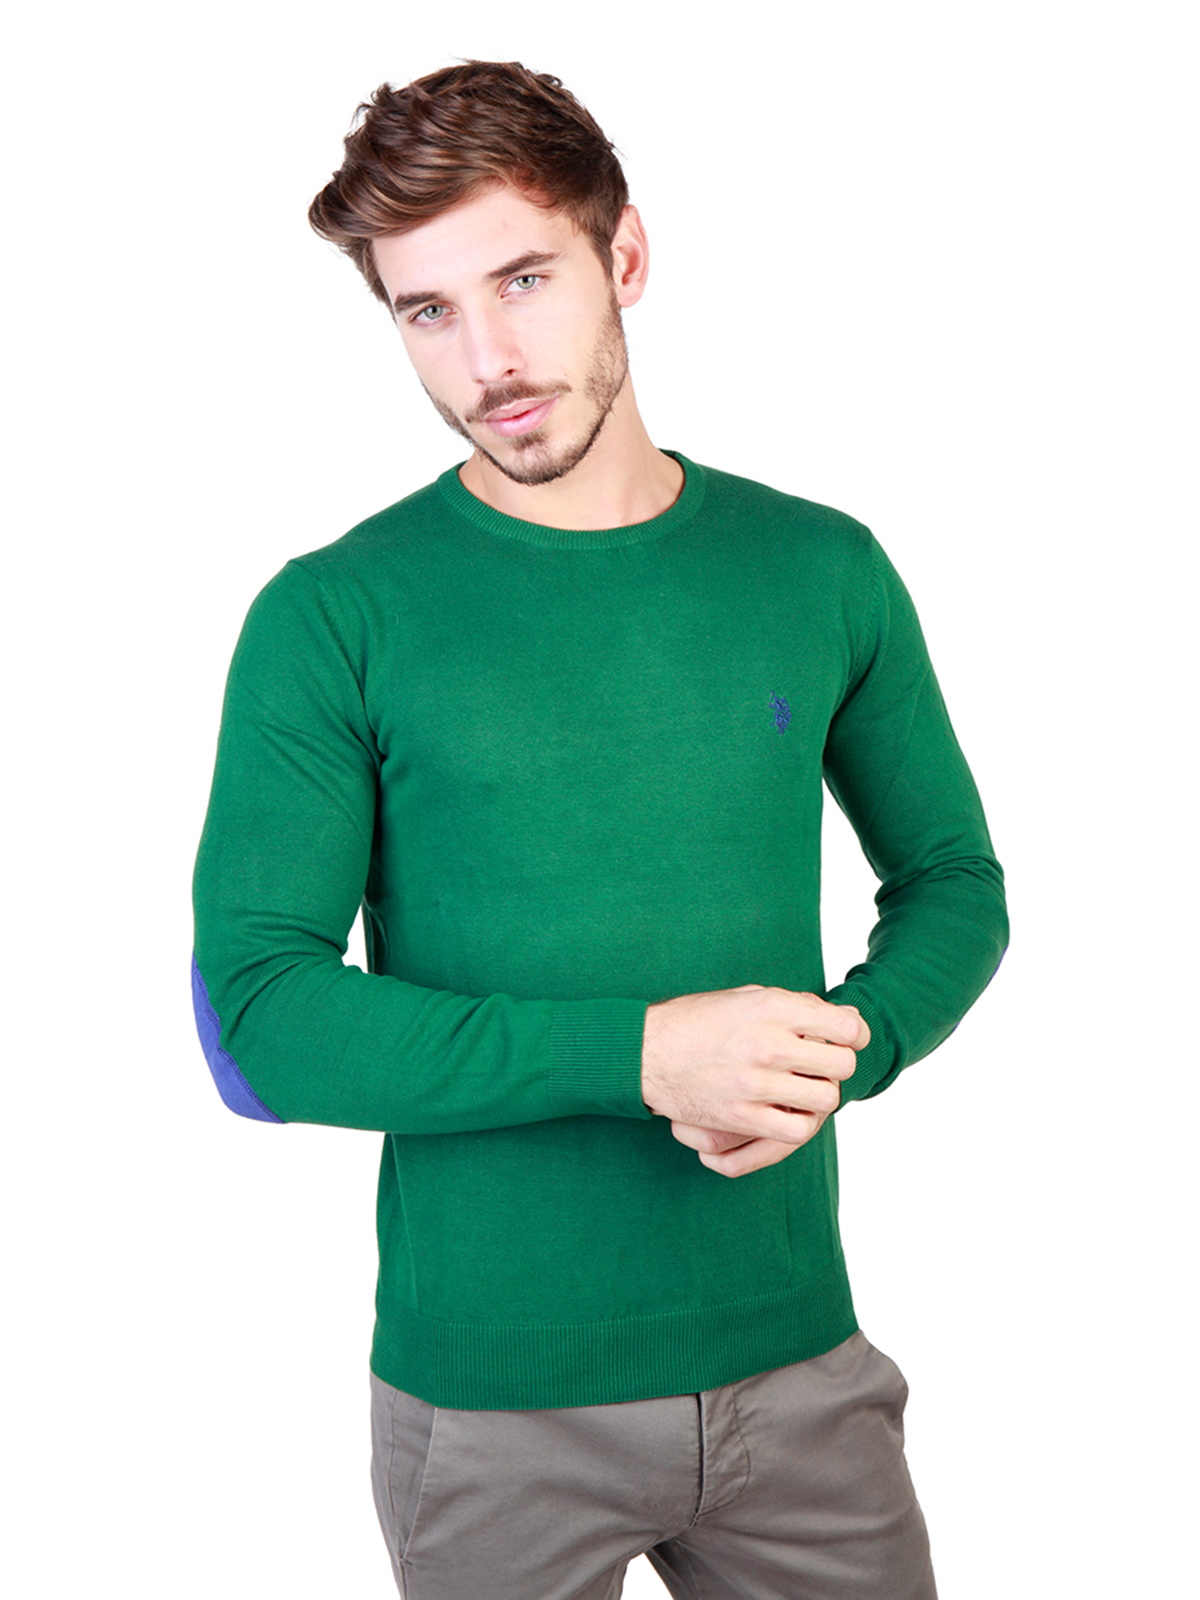 Зеленые свитеры мужские. Зеленый джемпер. Зеленый свитер. Мужчина в зеленом свитере. Салатовый свитер.